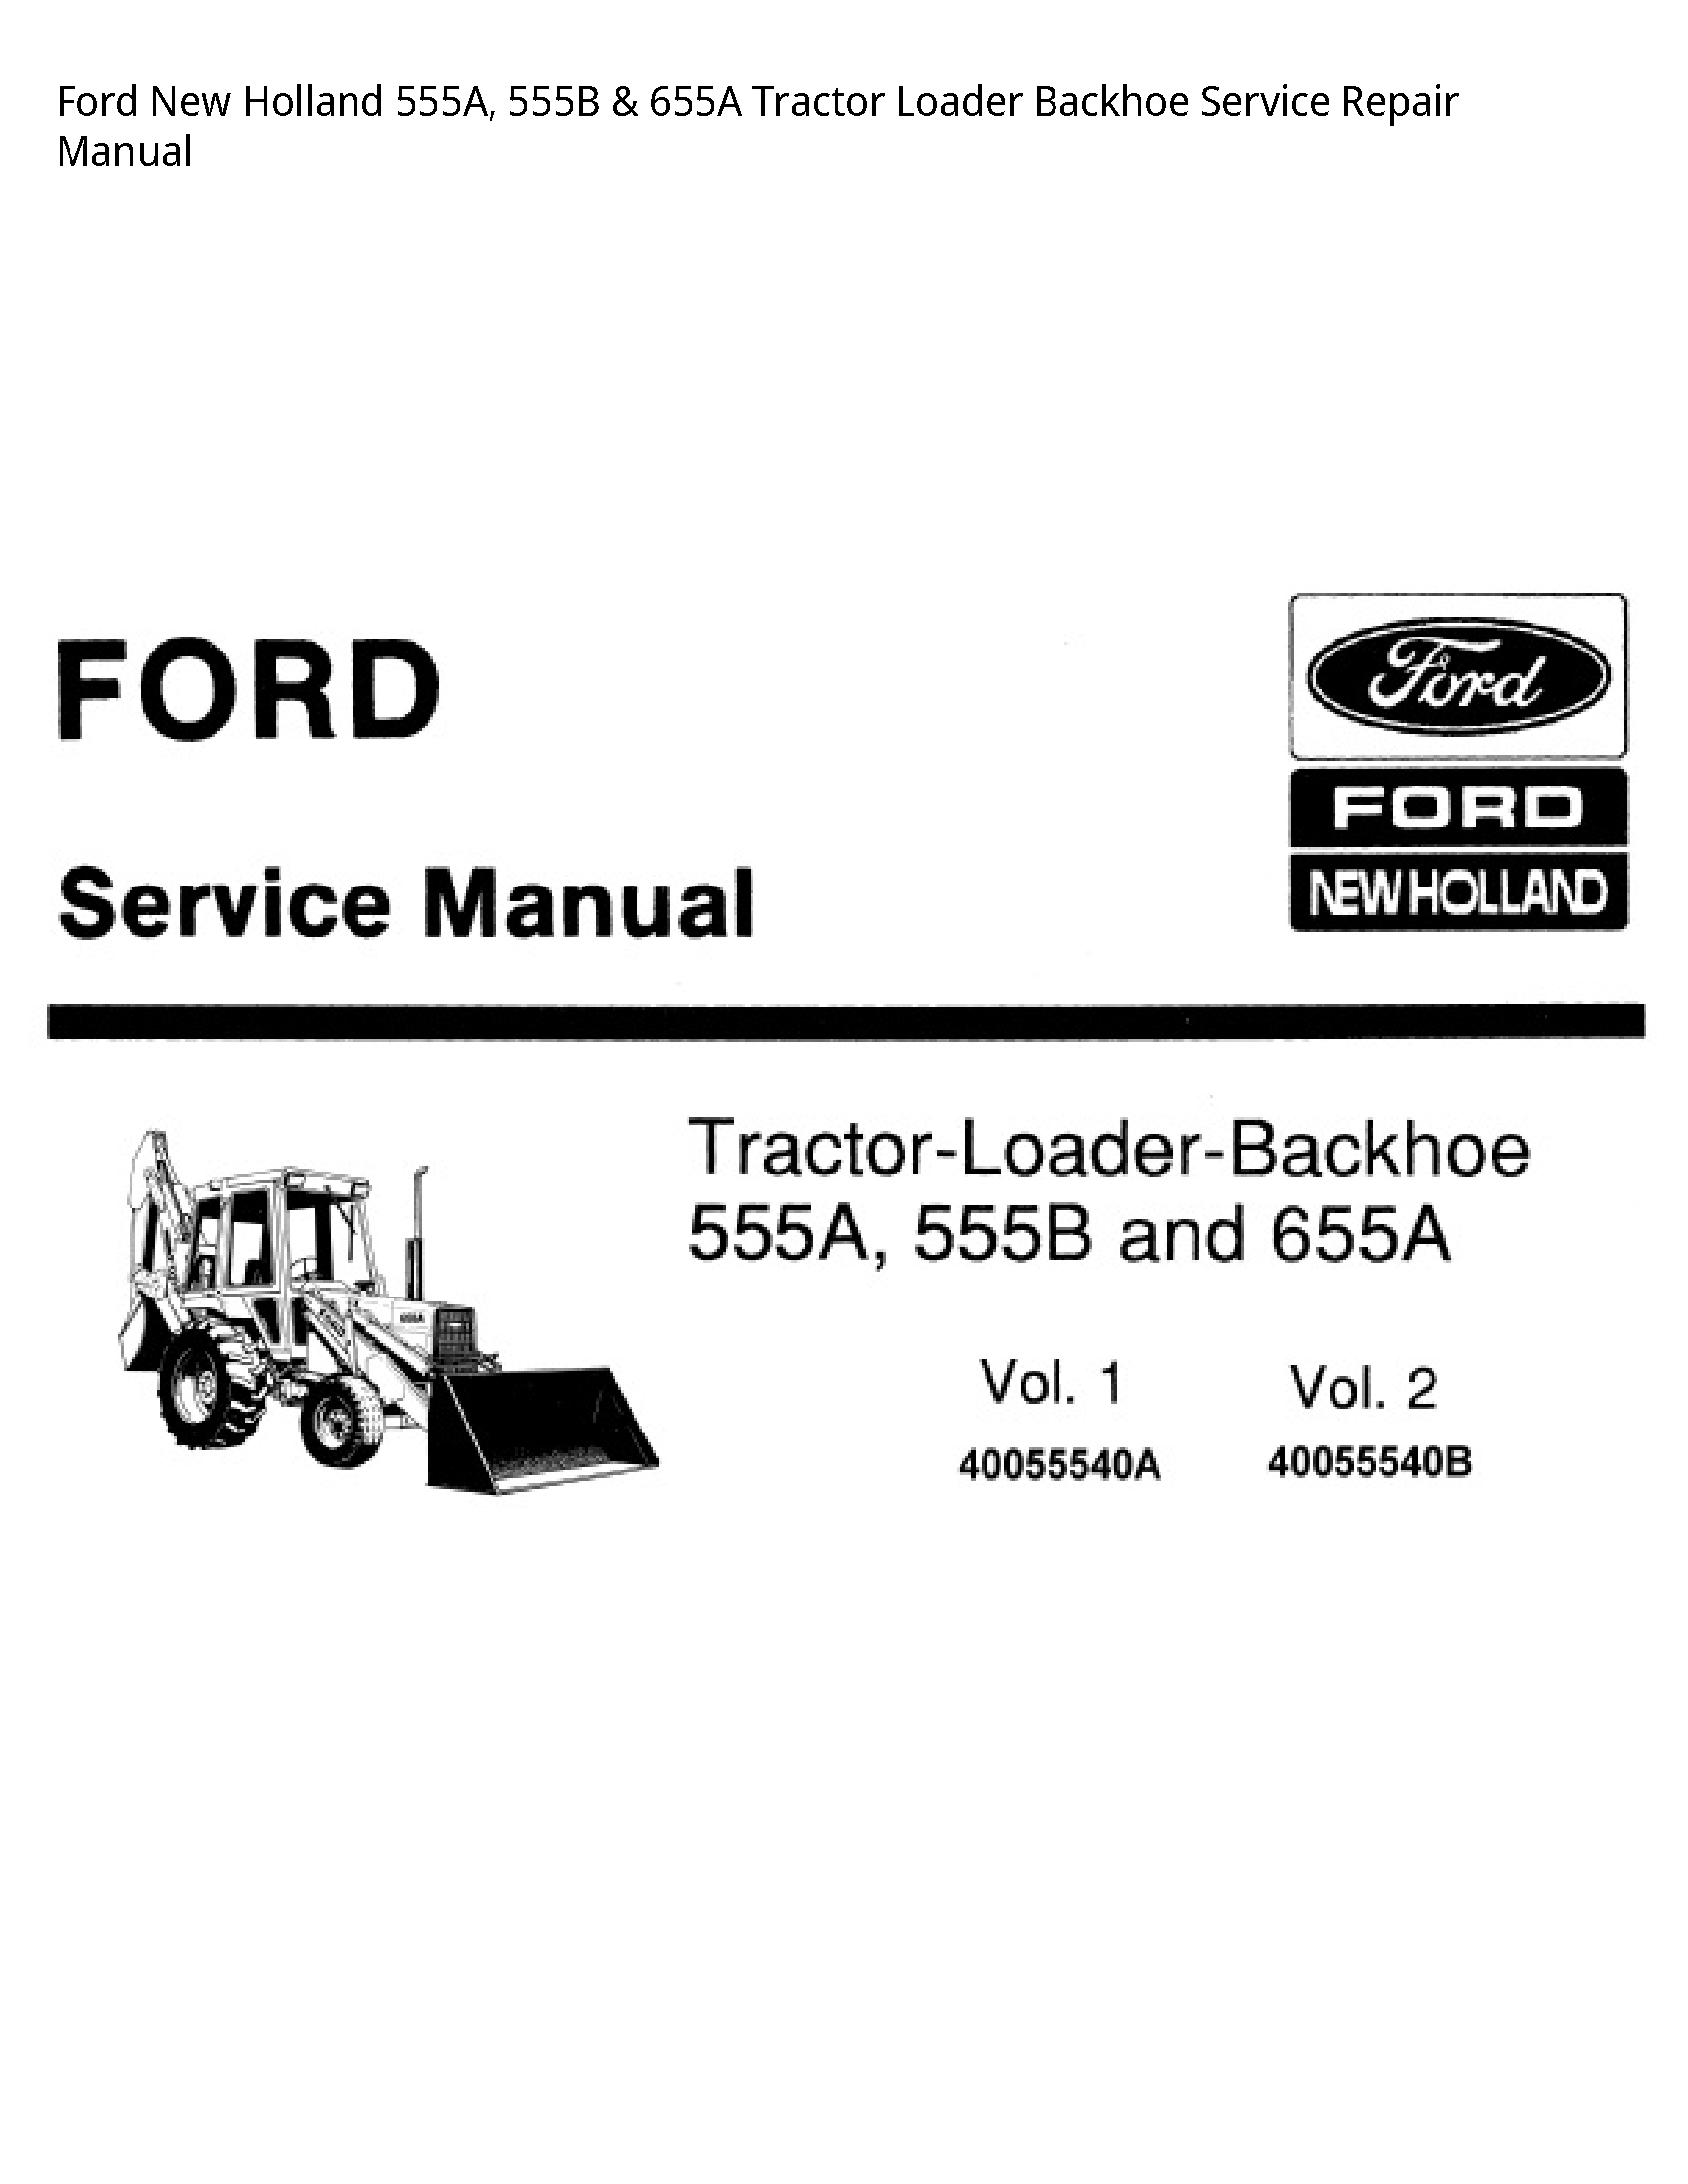  555A Tractor Loader Backhoe manual